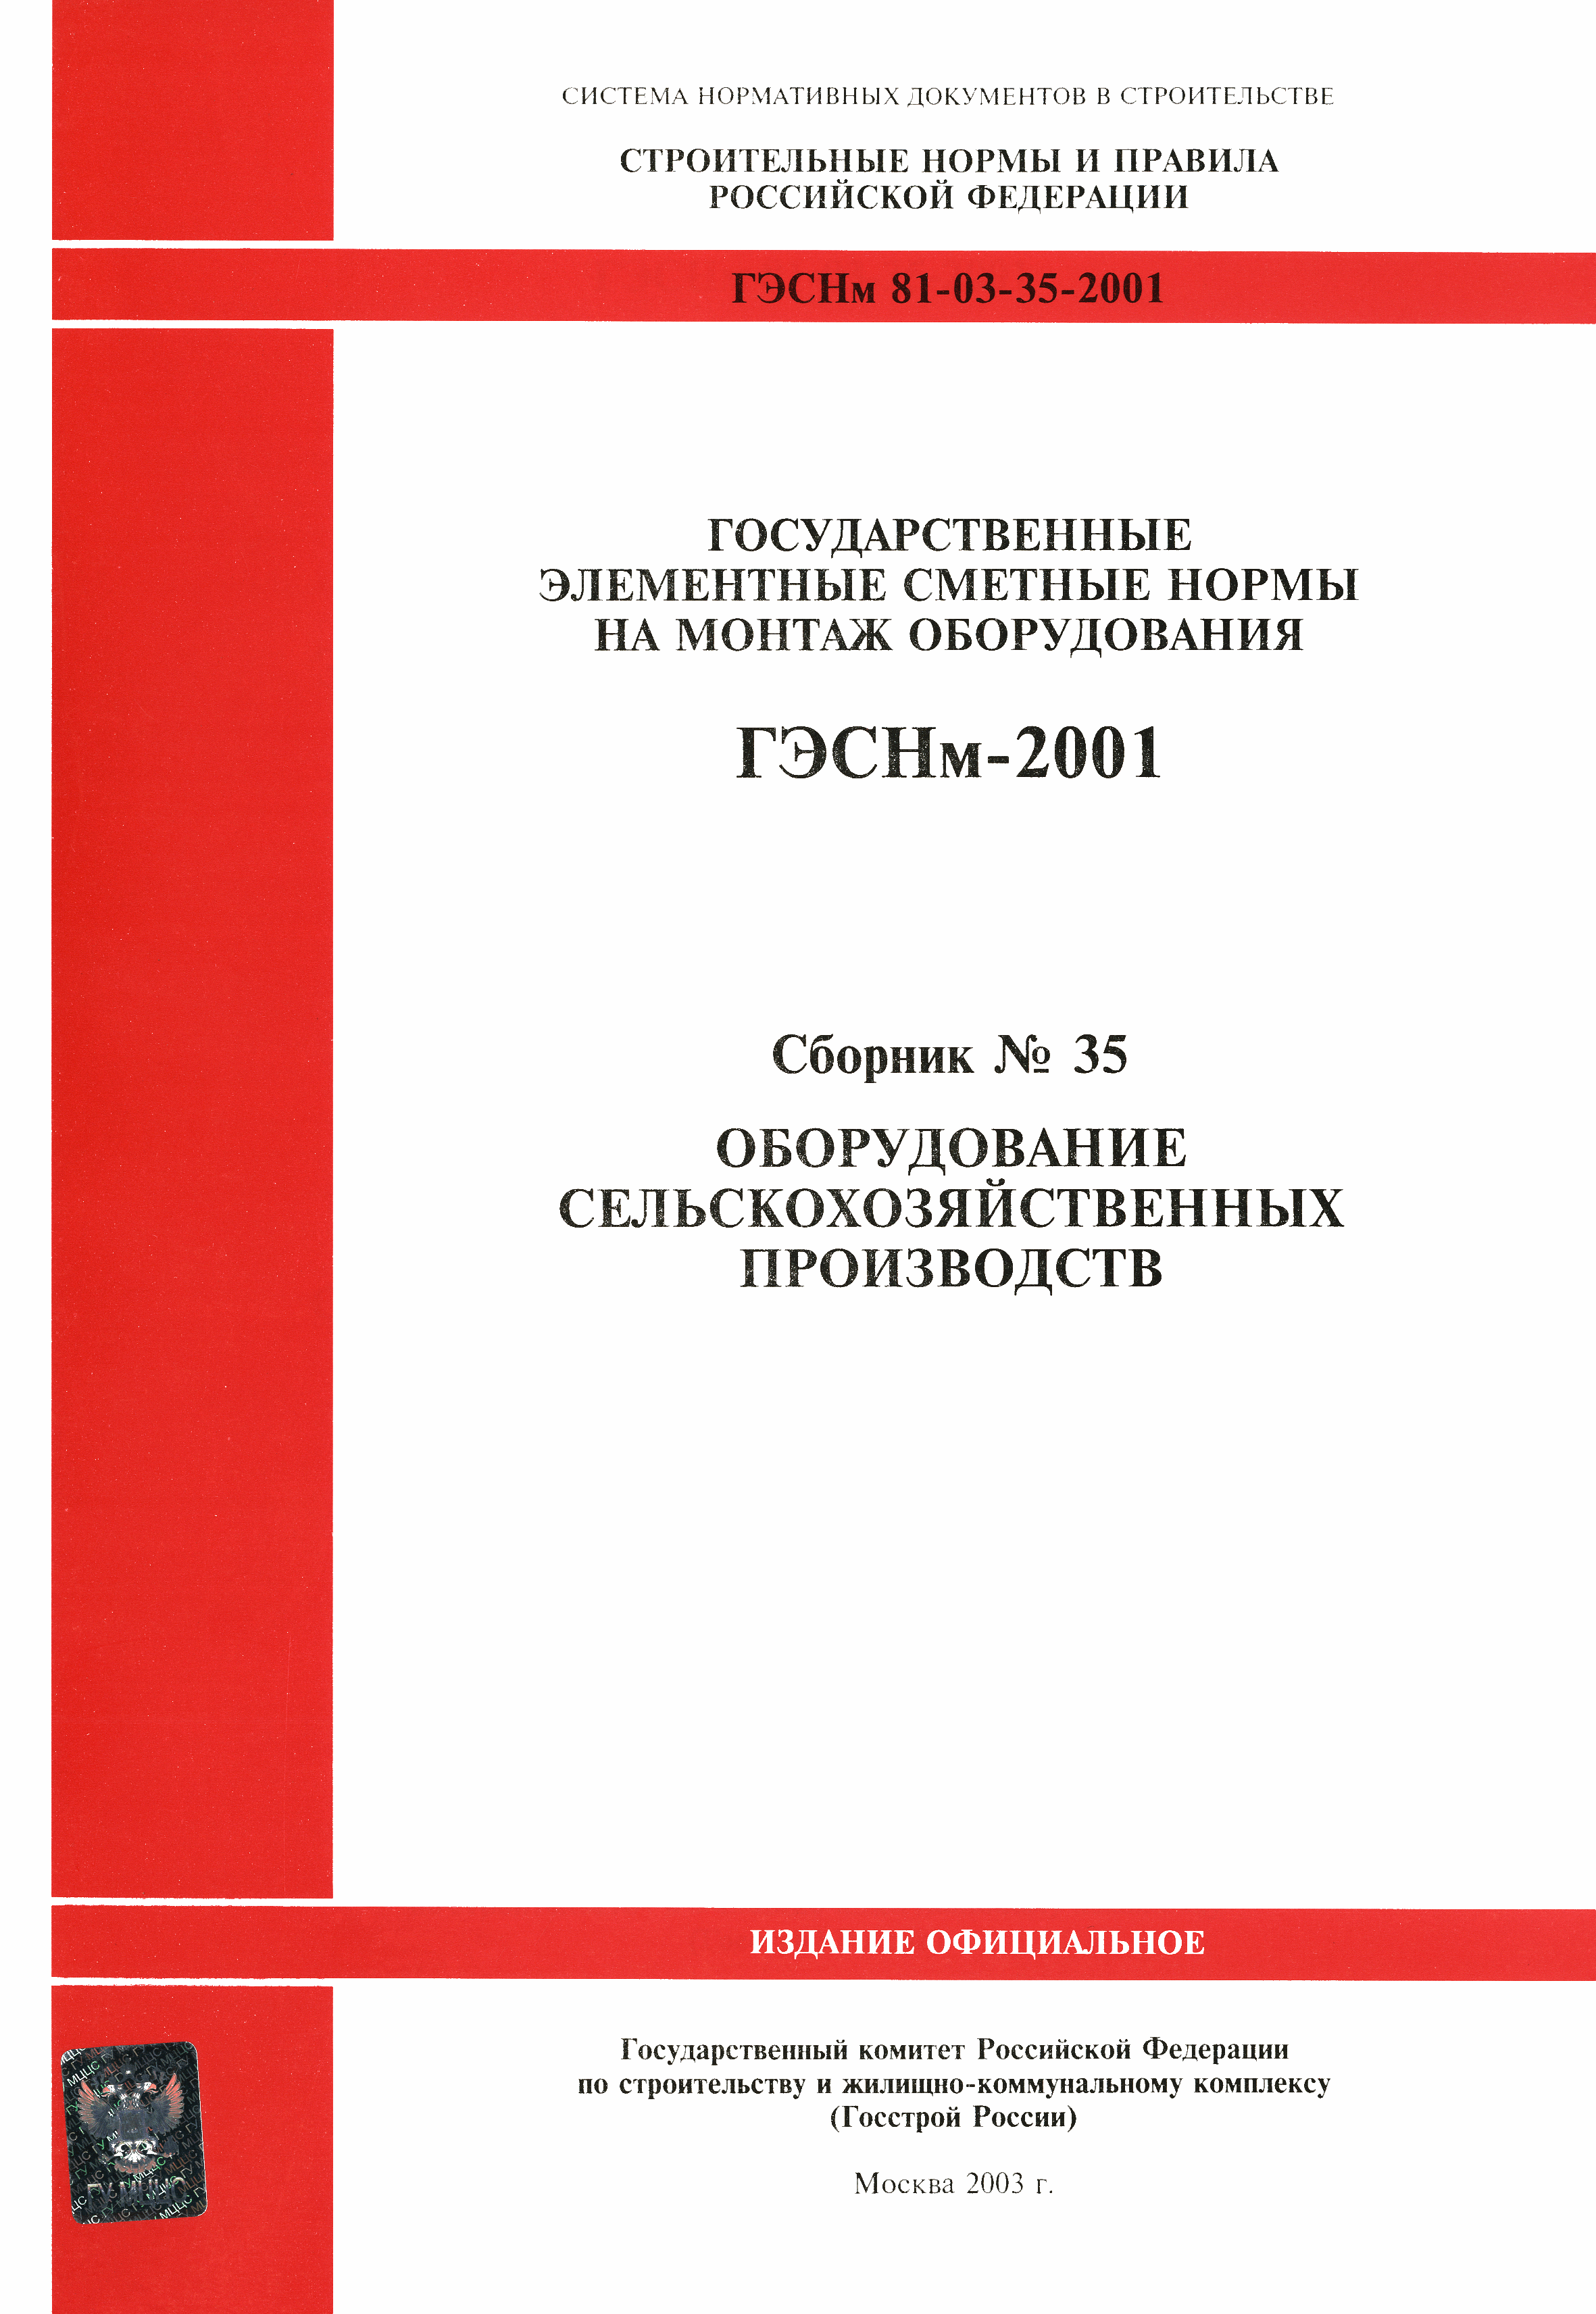 ГЭСНм 2001-35